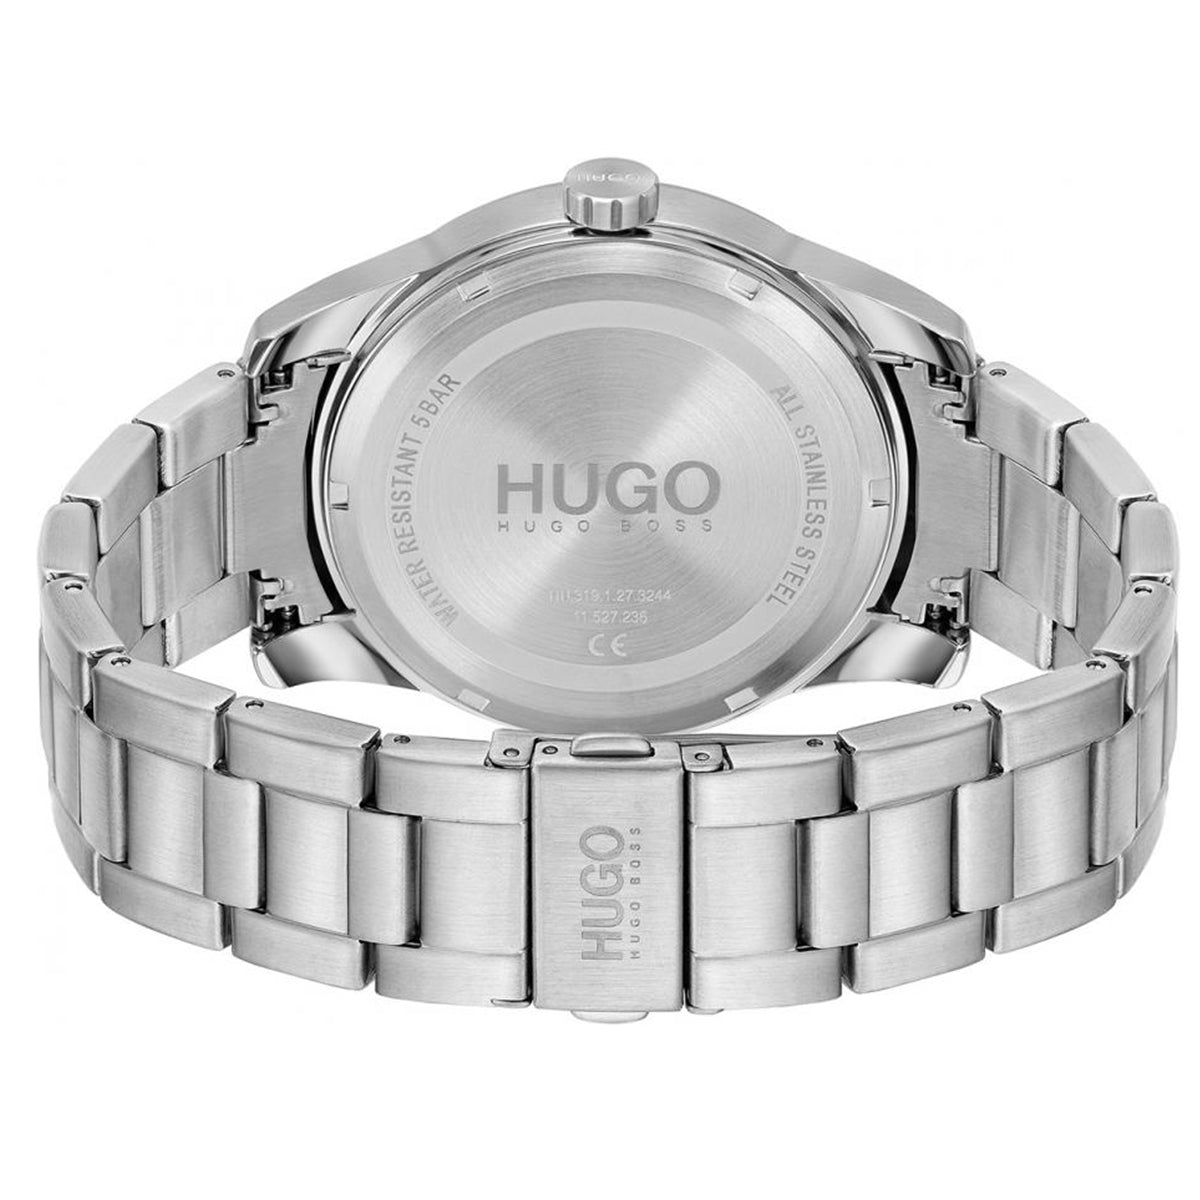 Hugo Boss - Skeleton - HB153.0191